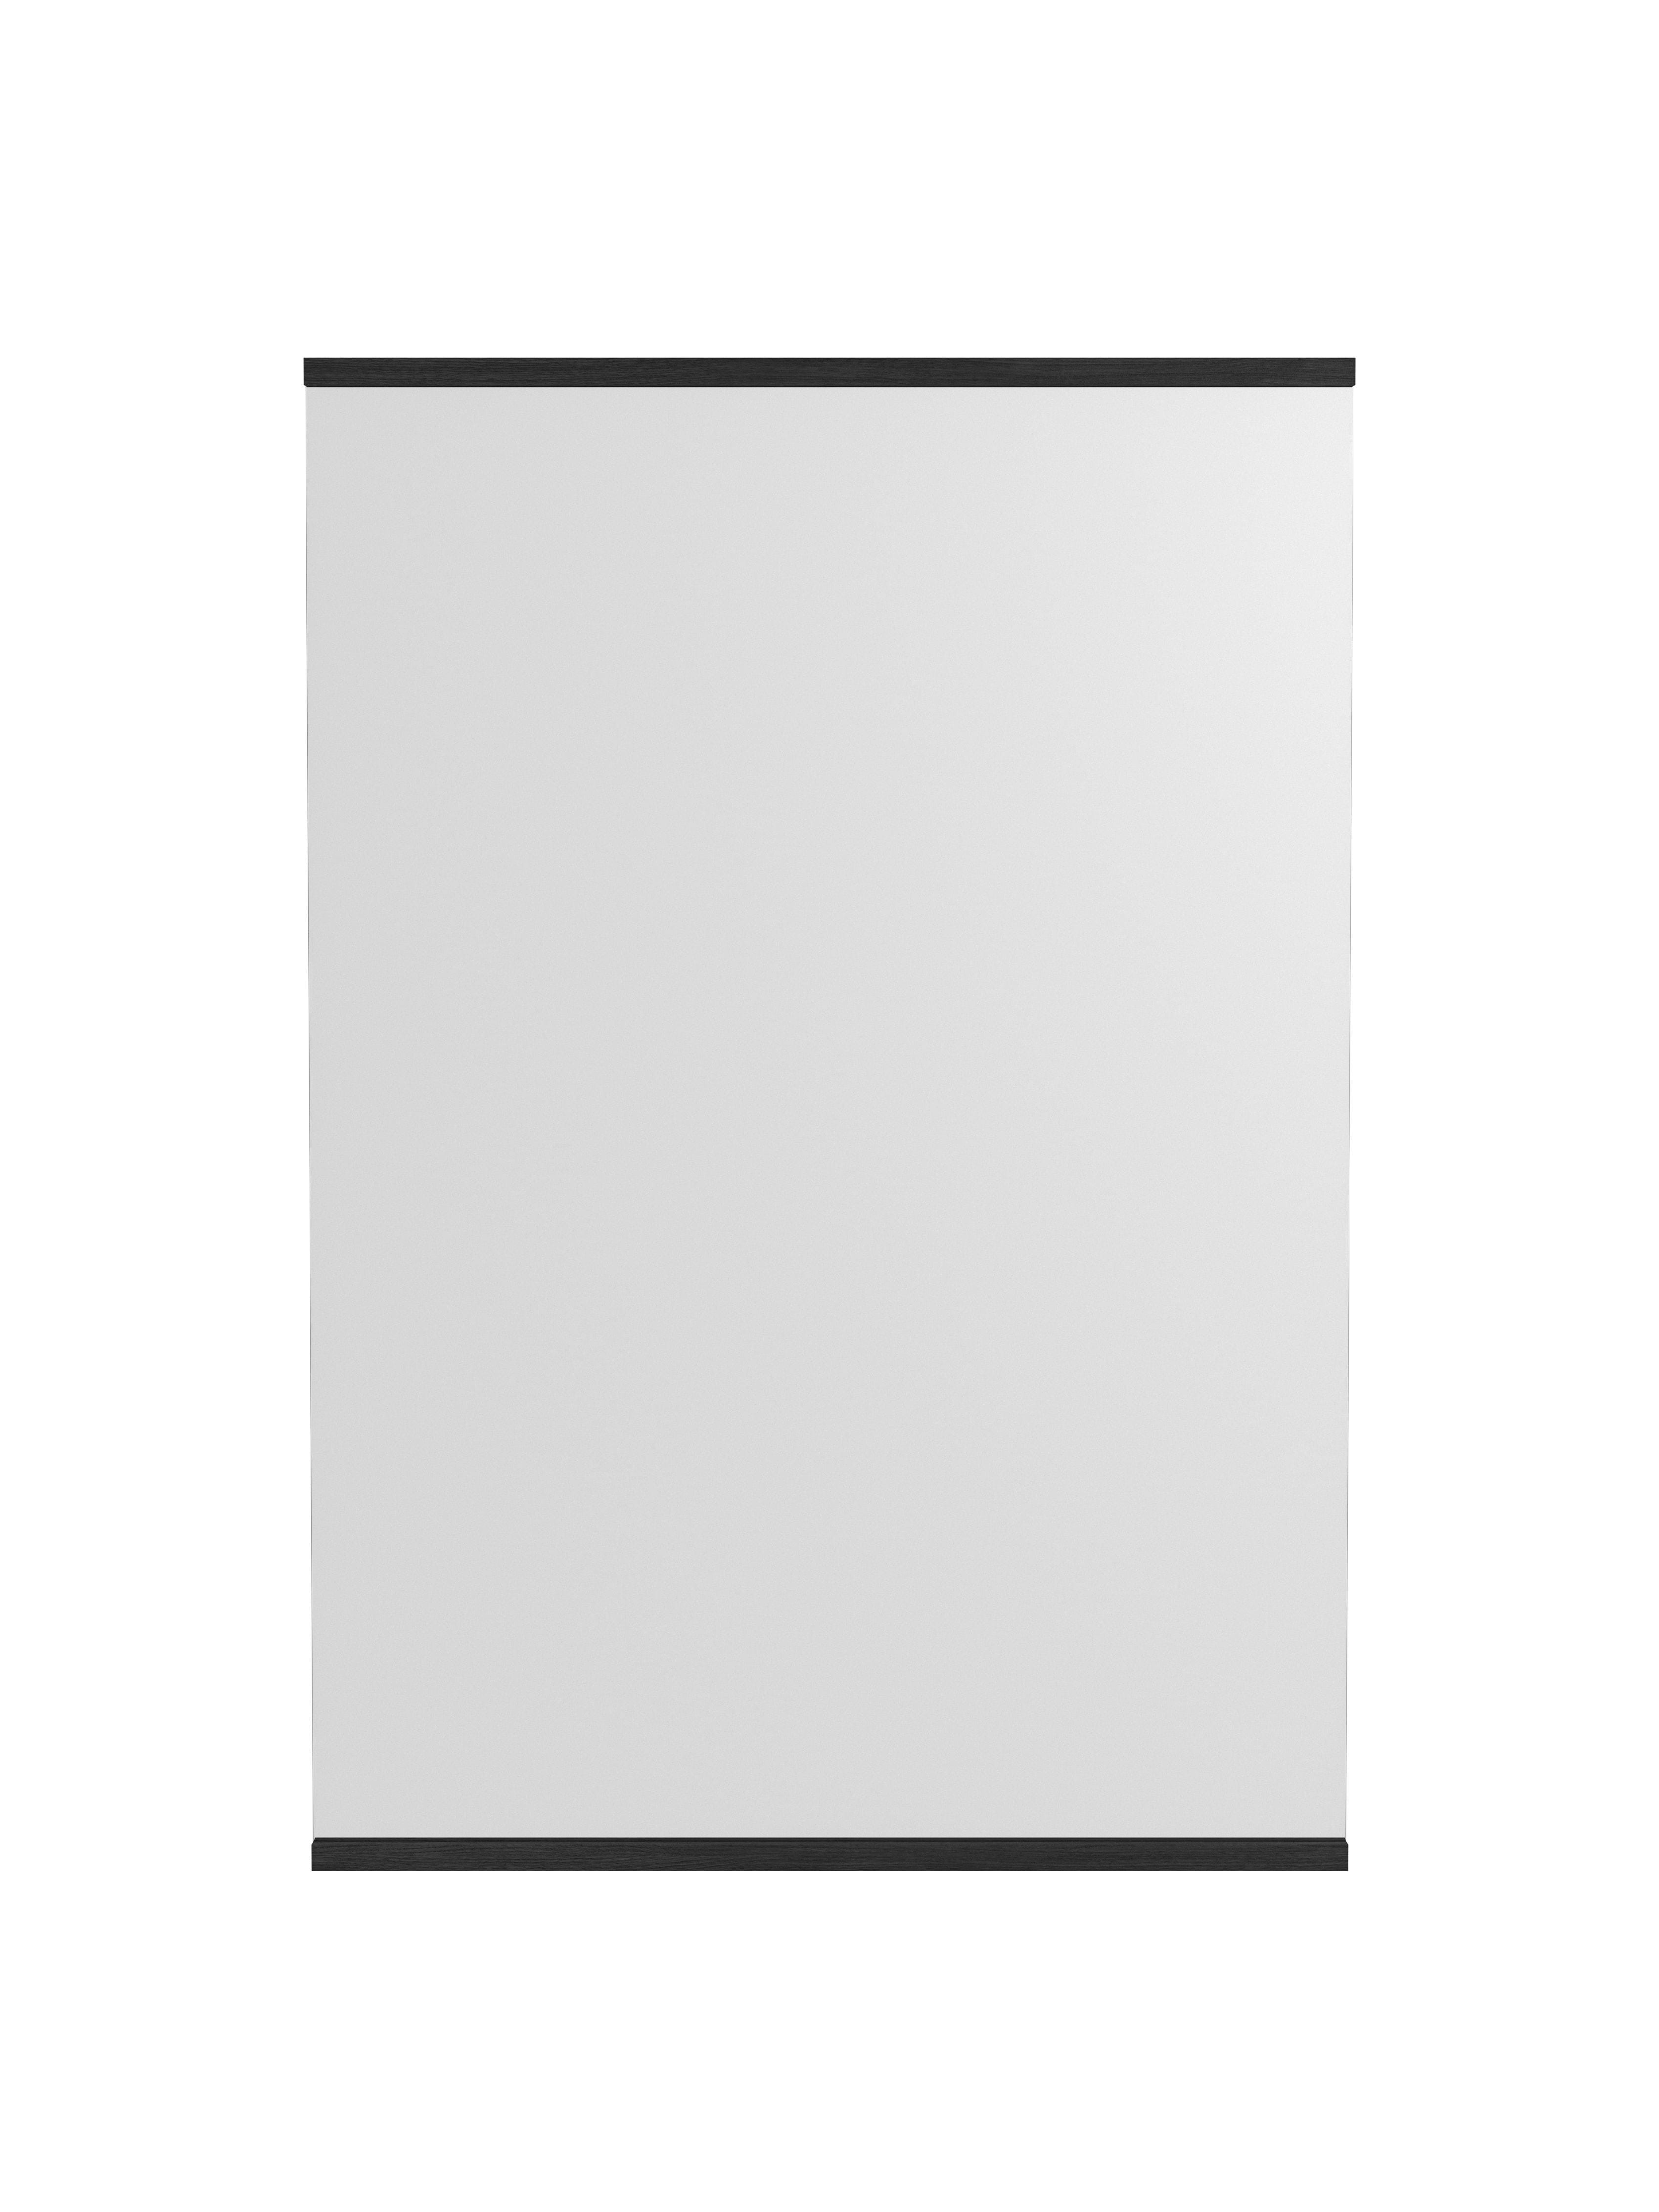 Moebe rétthyrnd veggspegill 101,8x70 cm, svartur